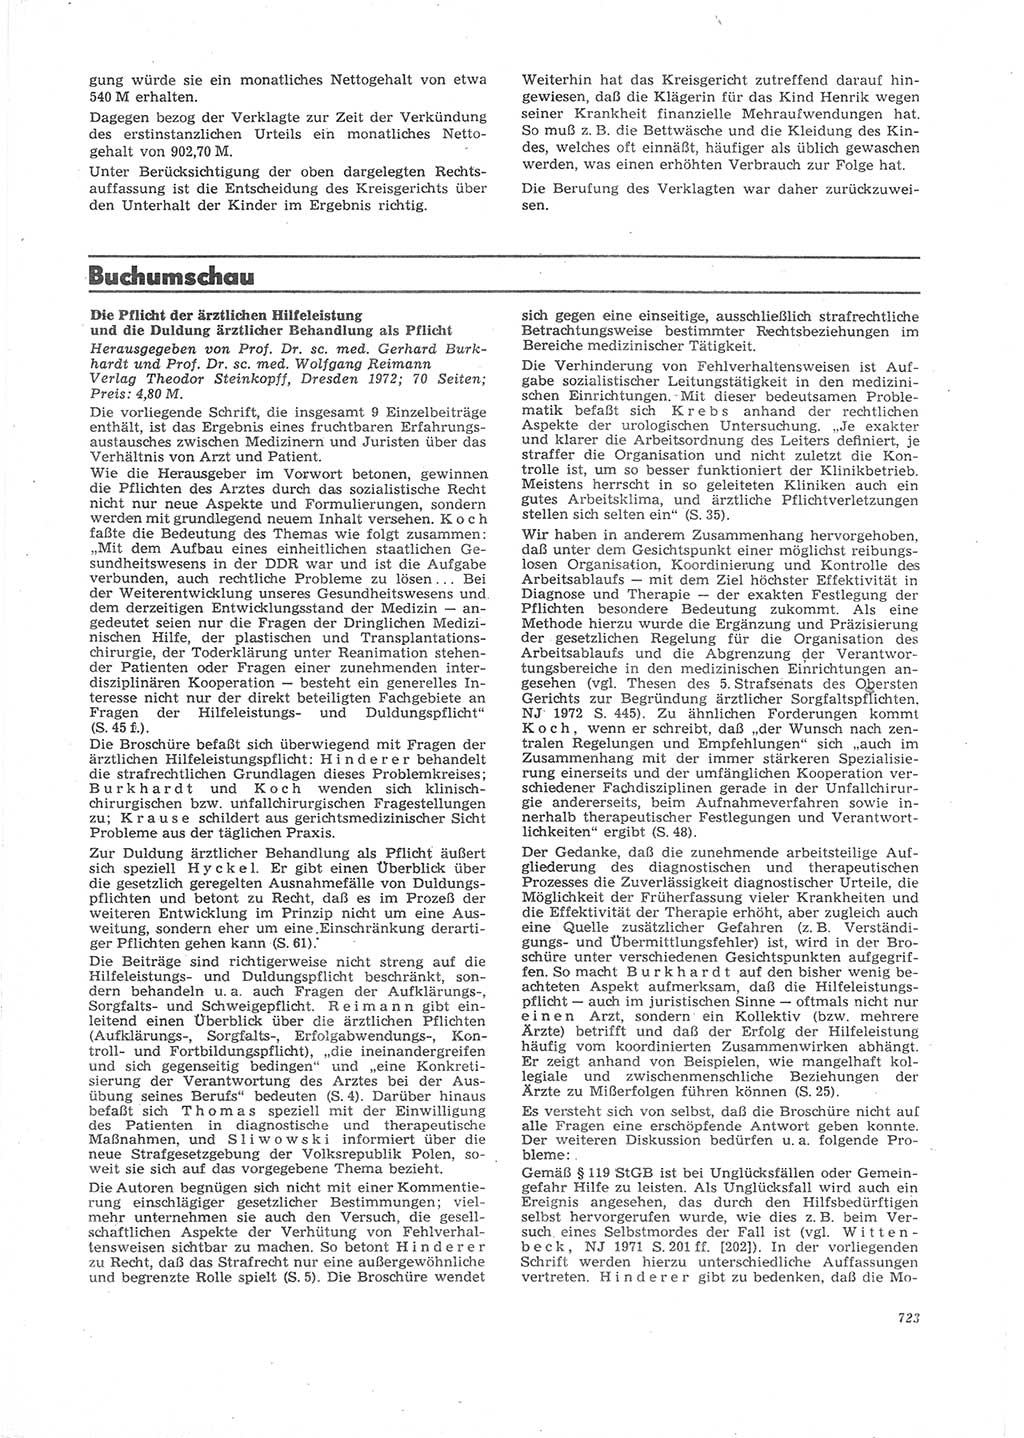 Neue Justiz (NJ), Zeitschrift für Recht und Rechtswissenschaft [Deutsche Demokratische Republik (DDR)], 26. Jahrgang 1972, Seite 723 (NJ DDR 1972, S. 723)